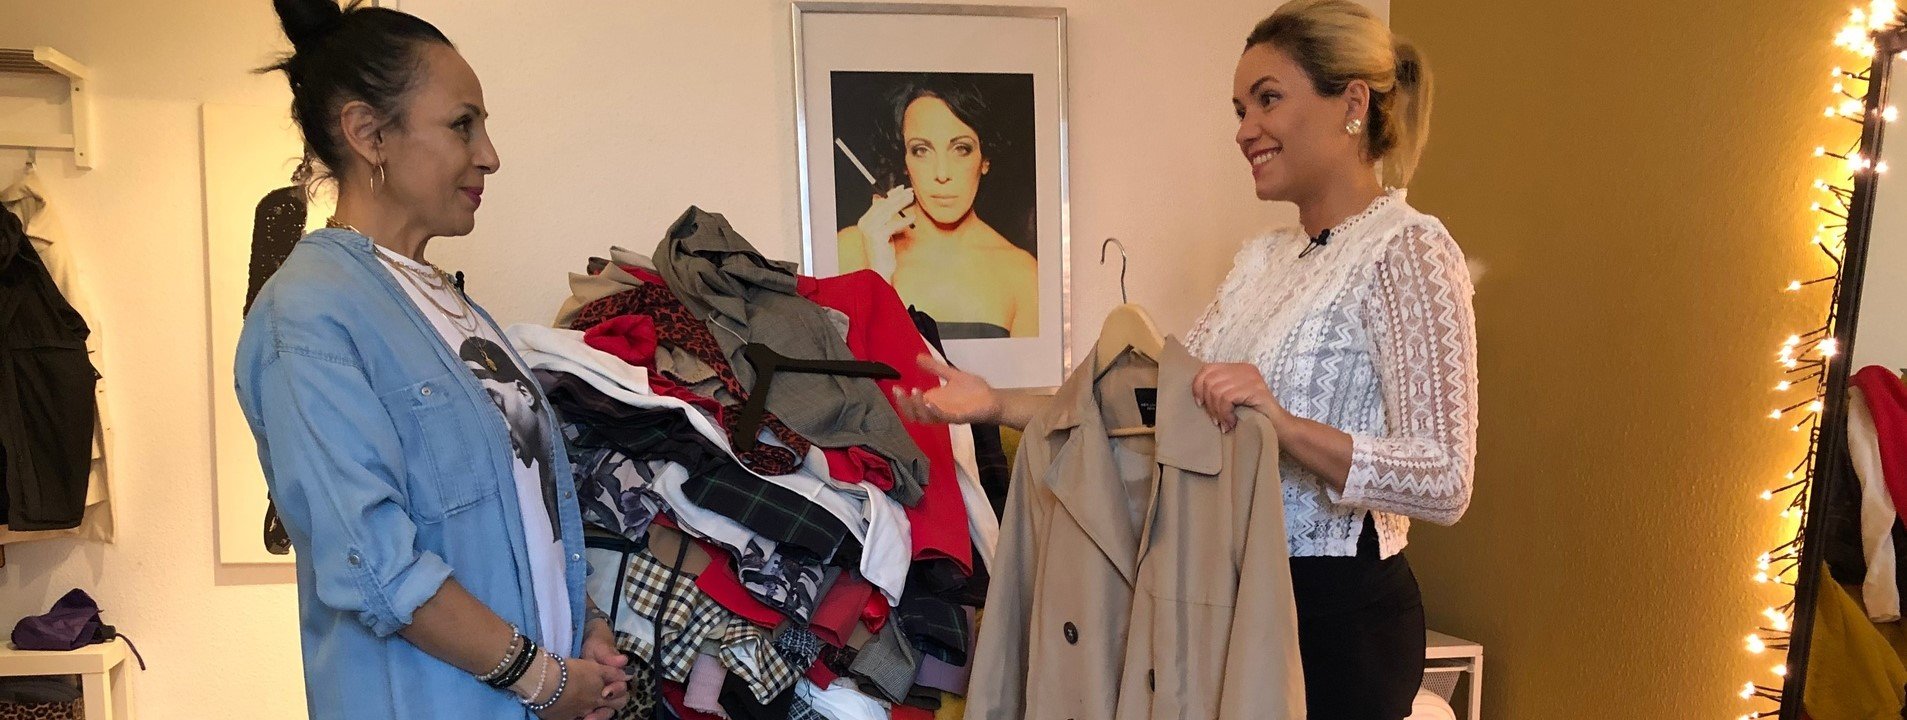 Loslassen statt horten. Despina bekommt Hilfe beim Aussortieren ihrer Kleidung von Aufräum-Profi Anika Schwertfeger. ZDF/Andrea Rudnick